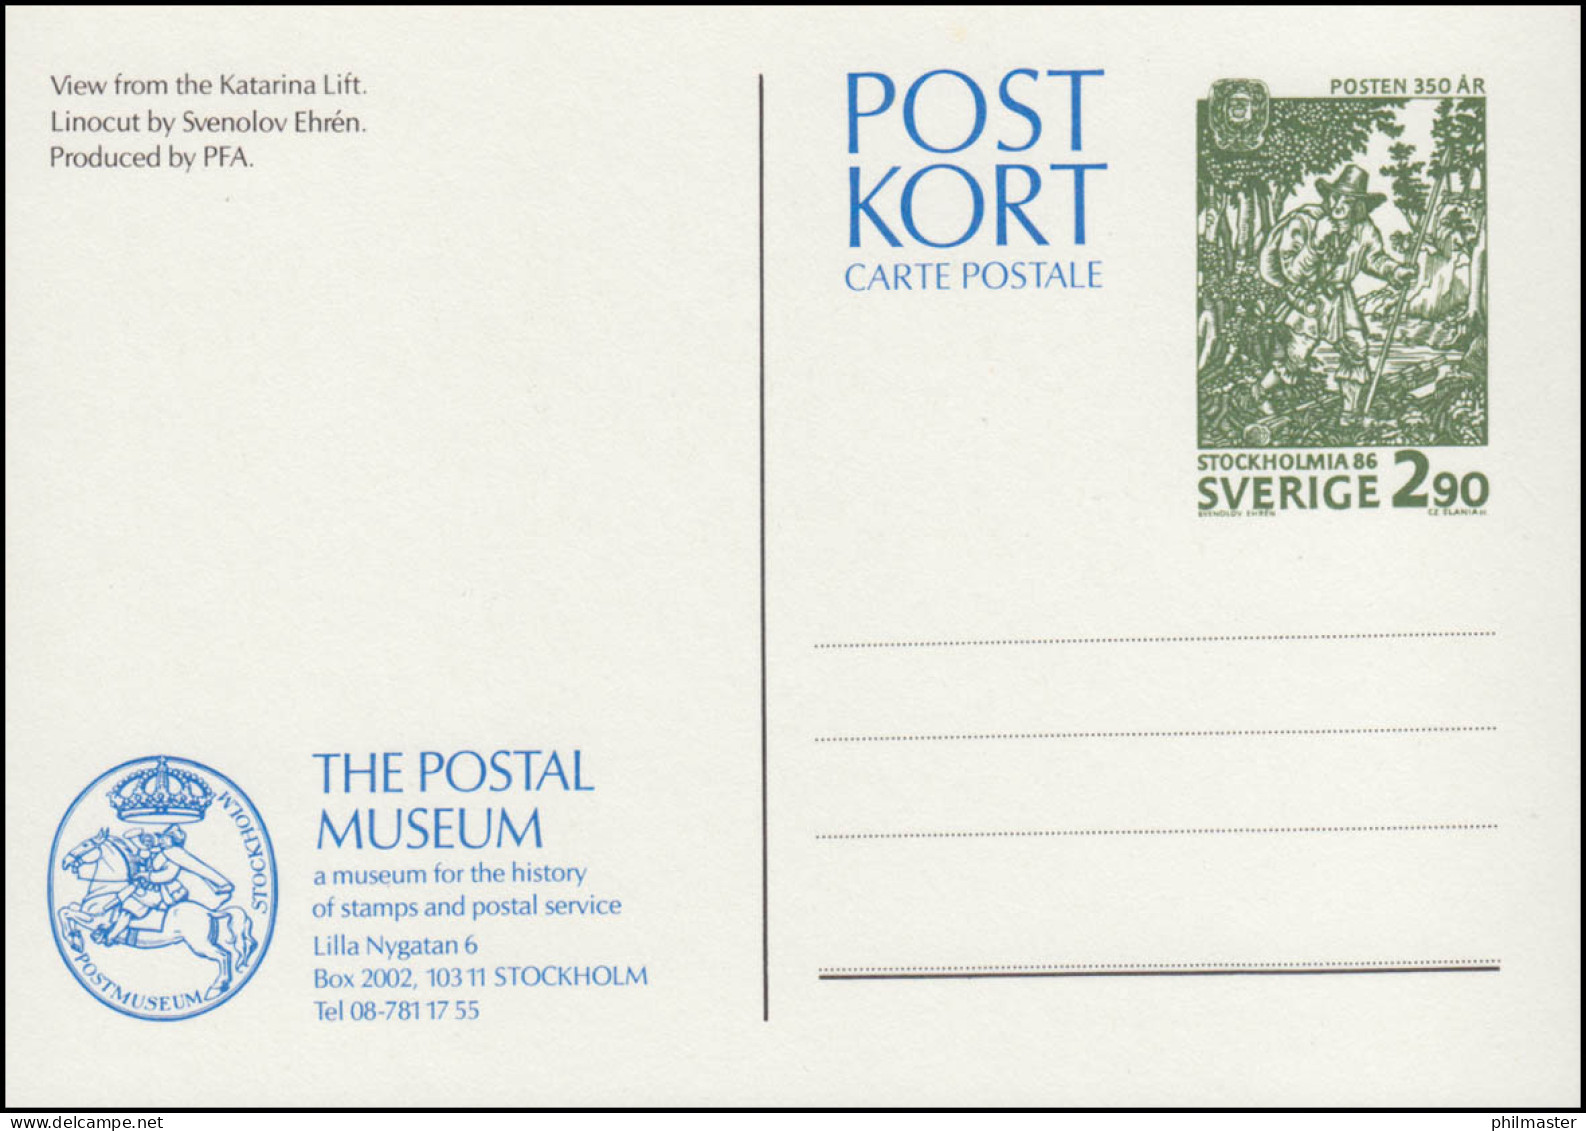 Schweden Postkarte P 108 350 Jahre Post 2,90 Krona 1986, ** Postfrisch - Postal Stationery